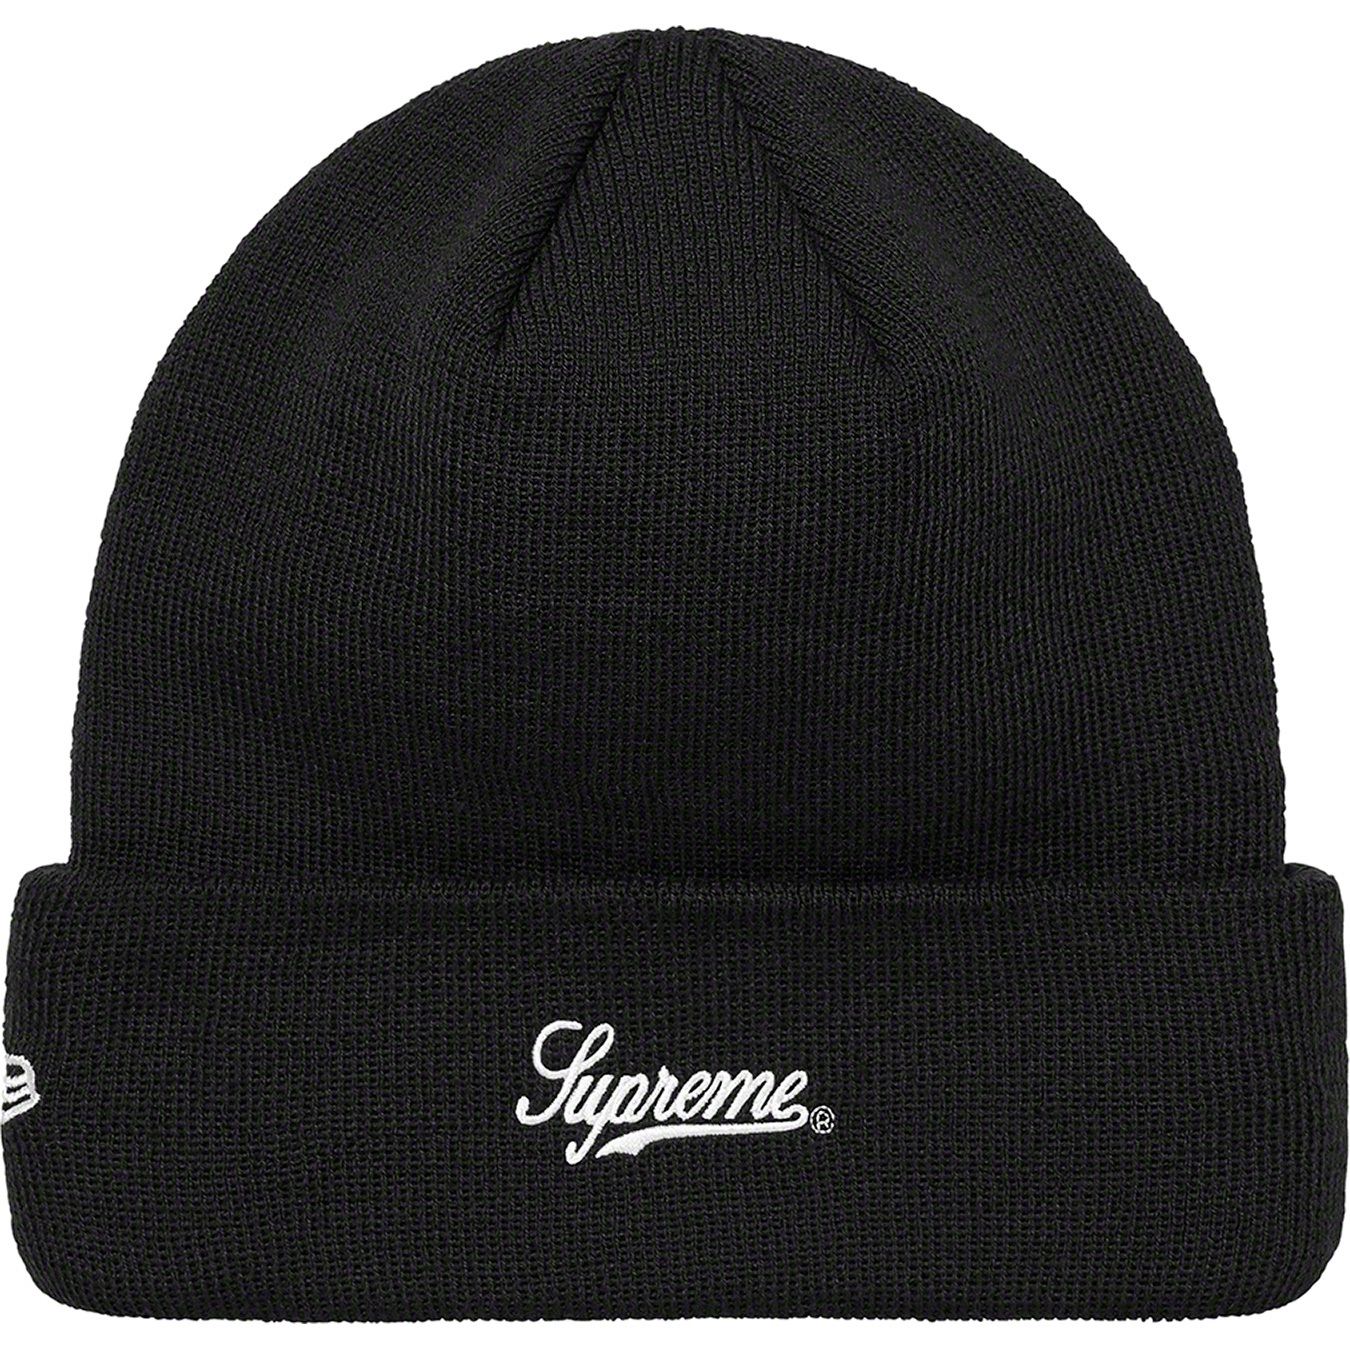 Supreme Skittles New Era Beanie Black - ニット帽/ビーニー